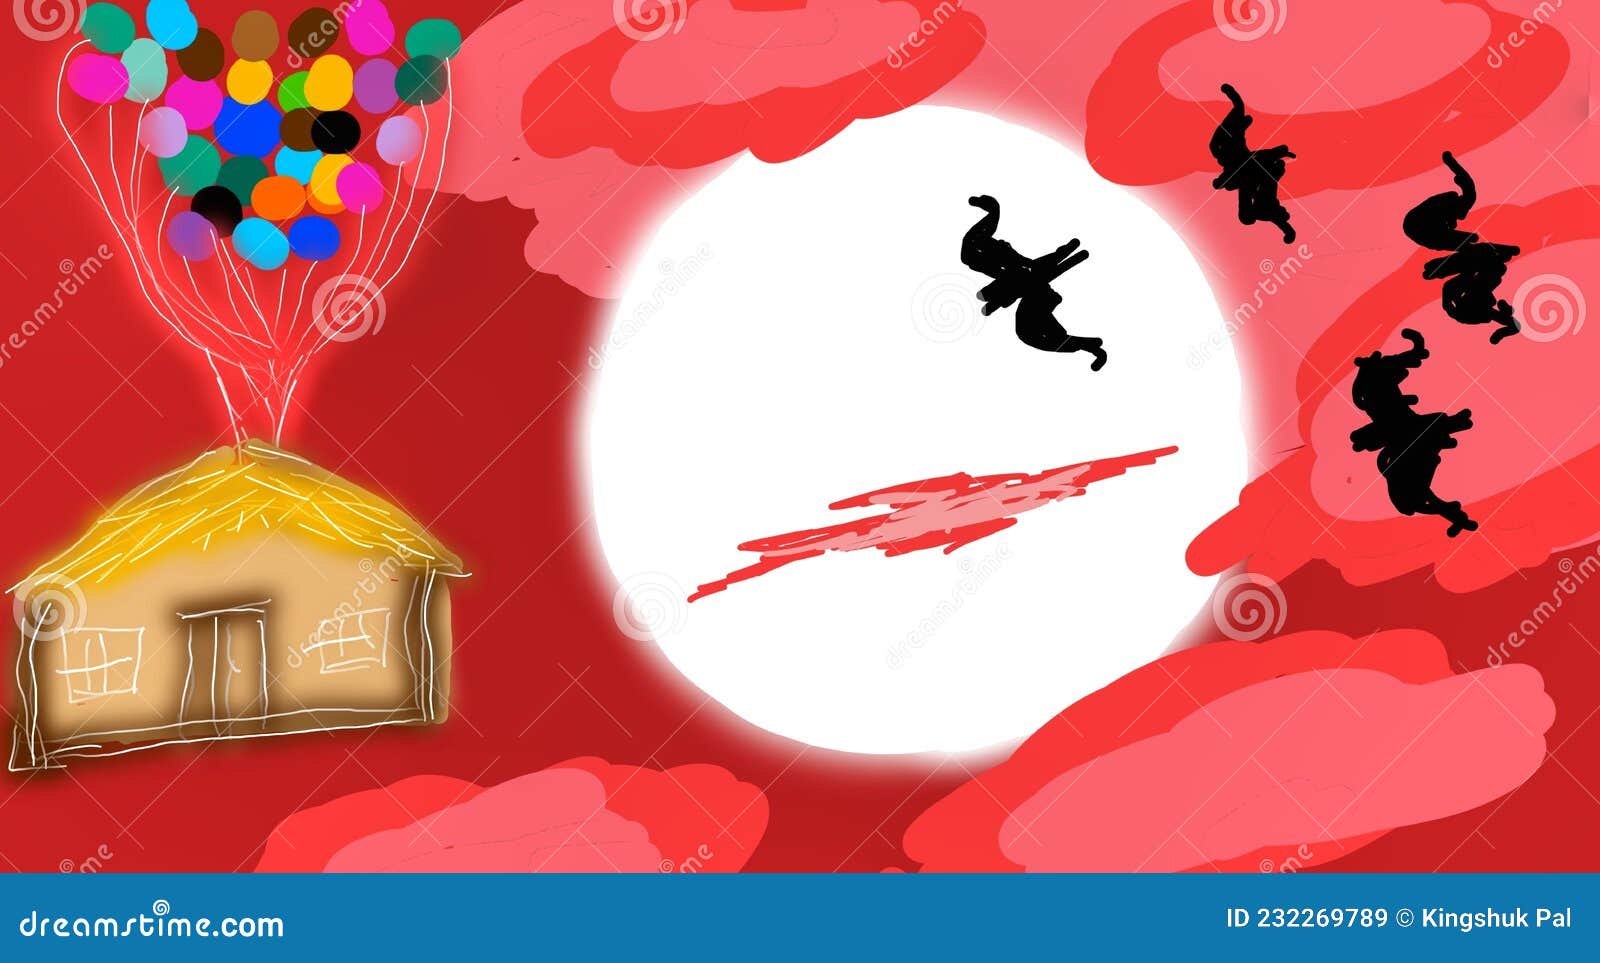 Dessin De Nuages Rouges Avec Maison De Chauve-souris De Lune Dans Le Ciel  Illustration Stock - Illustration du fonte, maison: 232269789